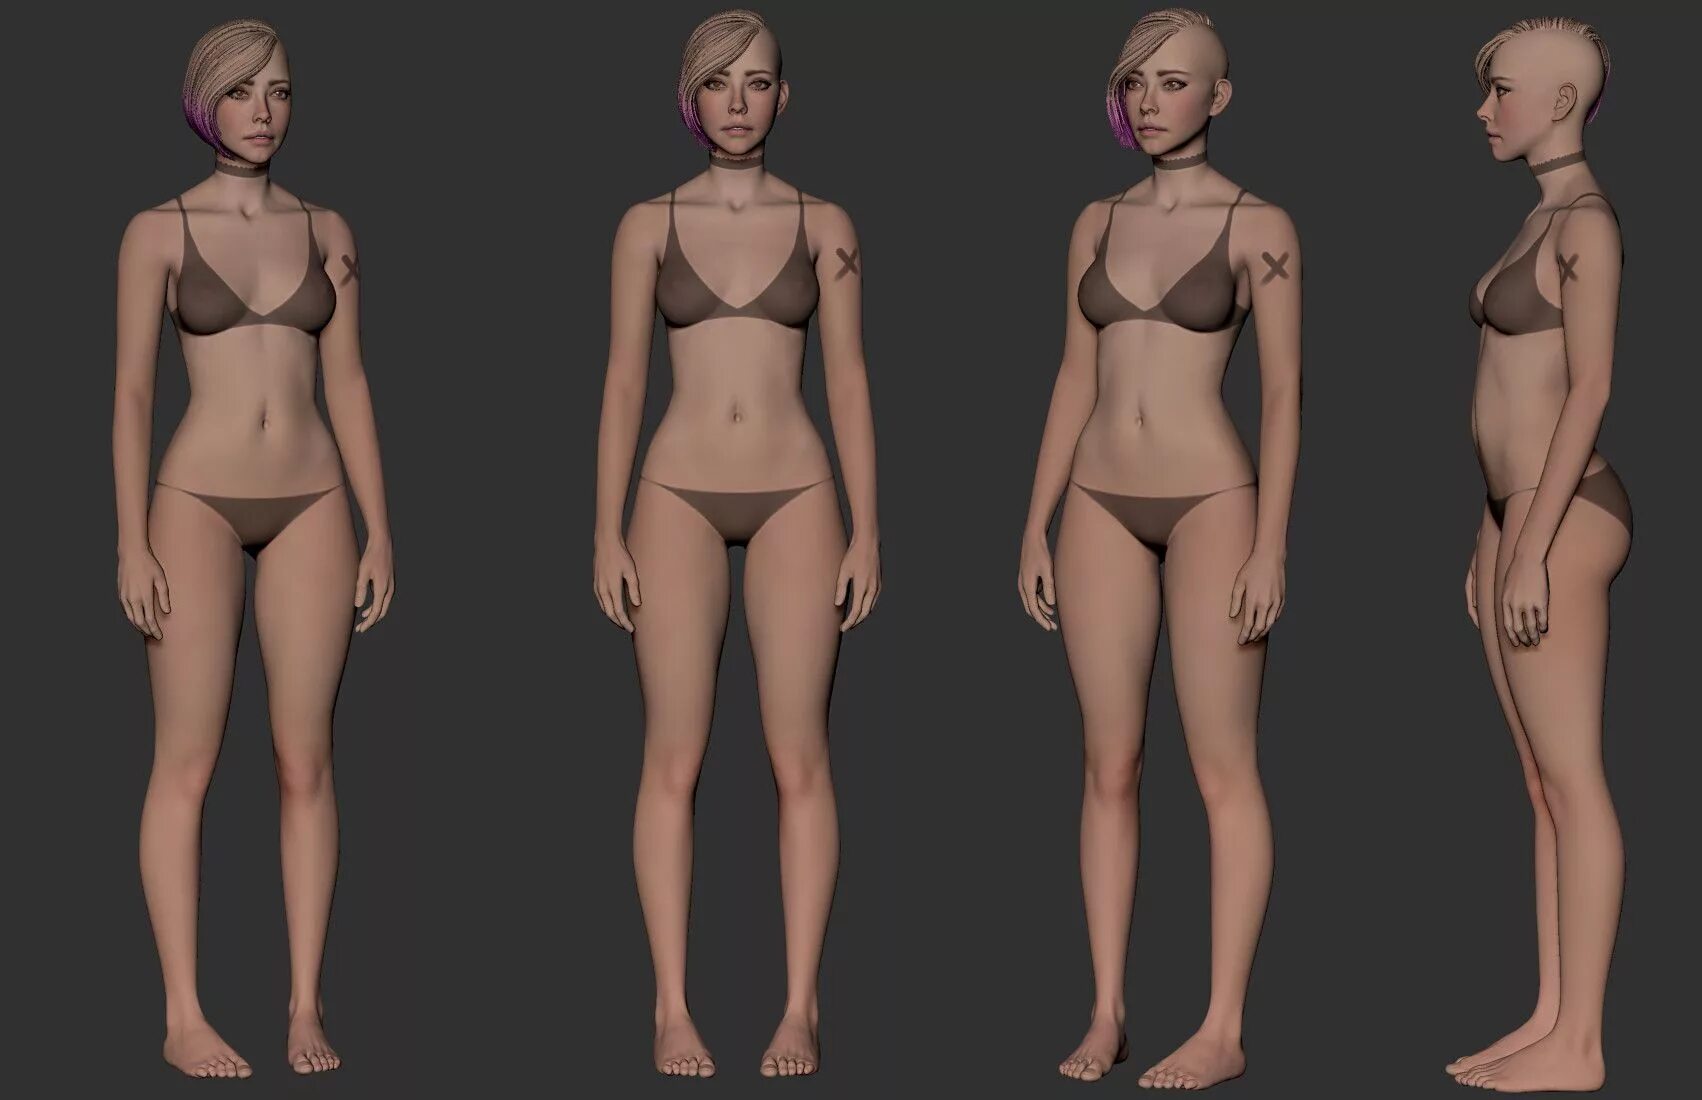 Detailed reference. 3d модель девушки. Референсы для 3d моделирования. Женщина для моделирования. Компьютерная модель девушки.